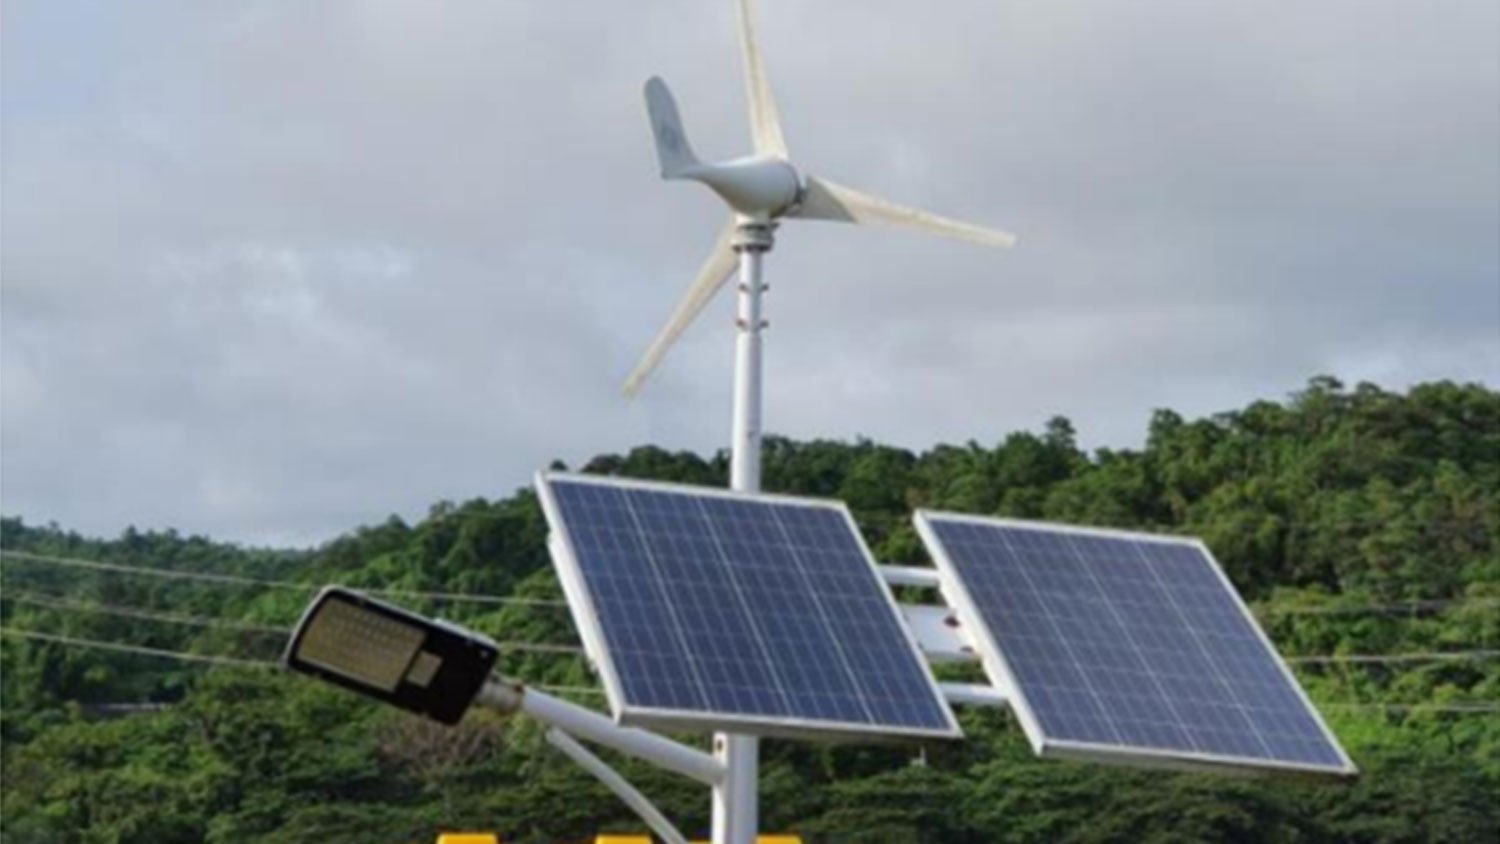 โครงการอนุรักษ์พลังงานโรงไฟฟ้า ในเครือ เอ็กโก กรุ๊ป